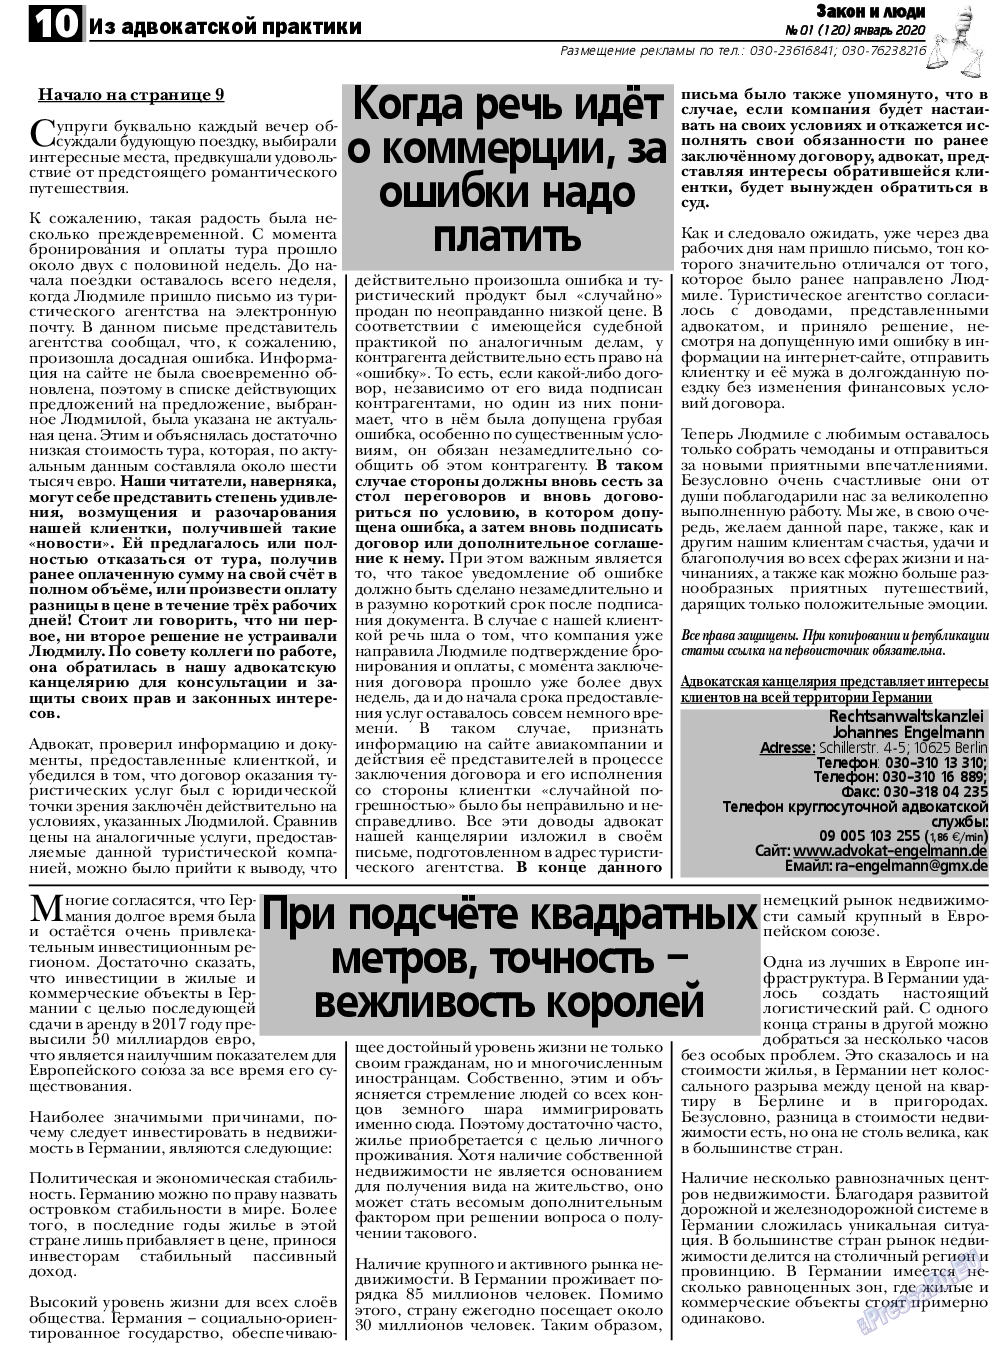 Закон и люди, газета. 2020 №1 стр.10